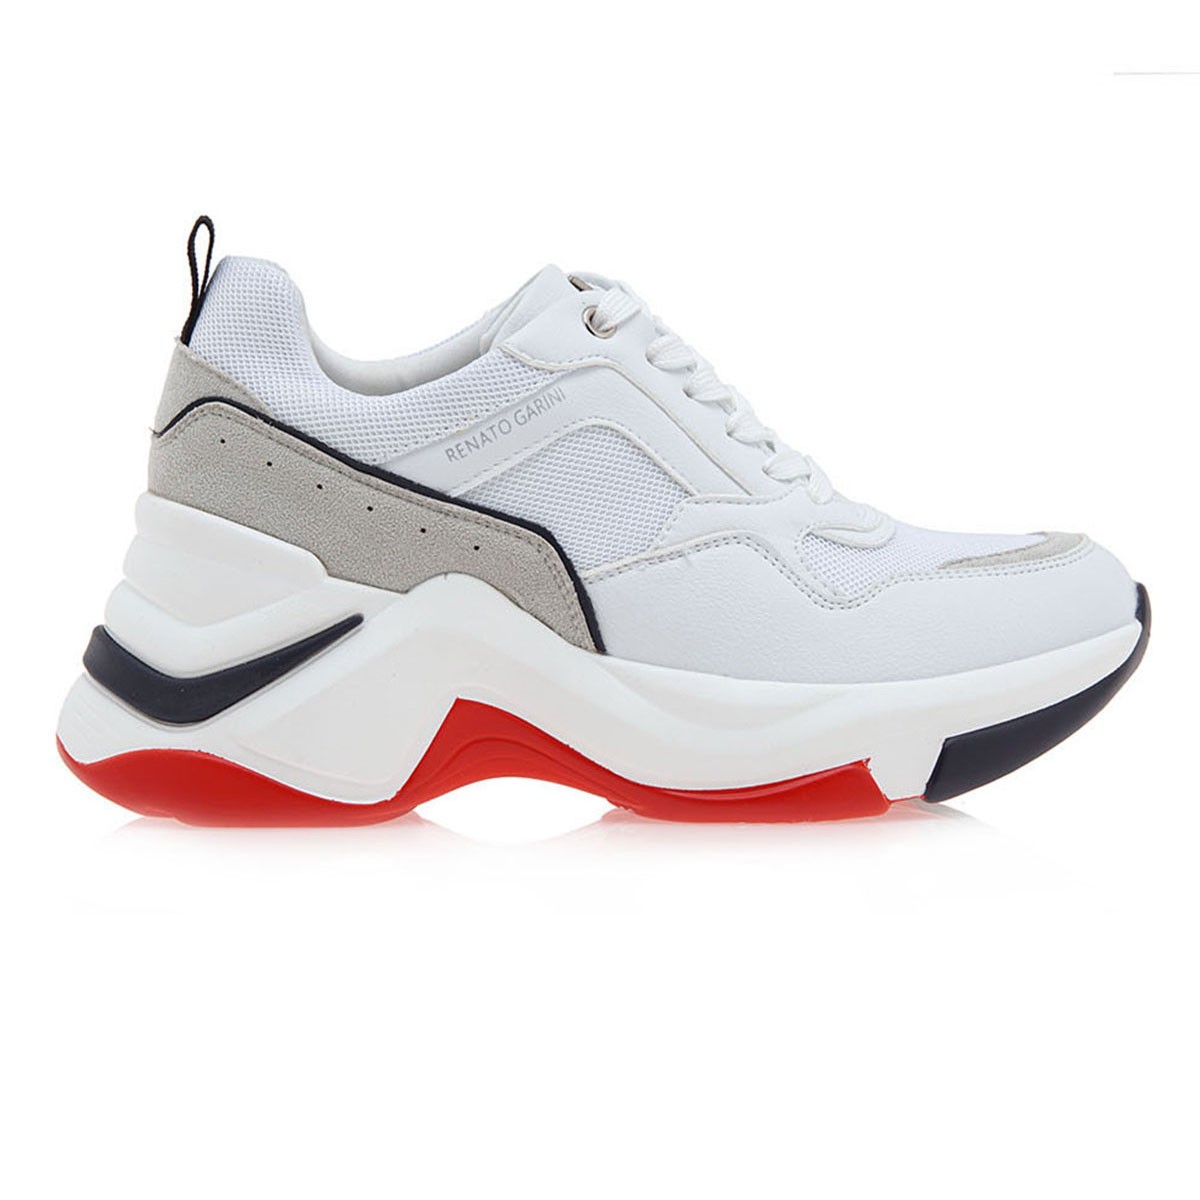 Renato Garini Γυναικεία Παπούτσια Sneakers 617-19R Λευκό Μπέζ Καστόρι O119R6173K22